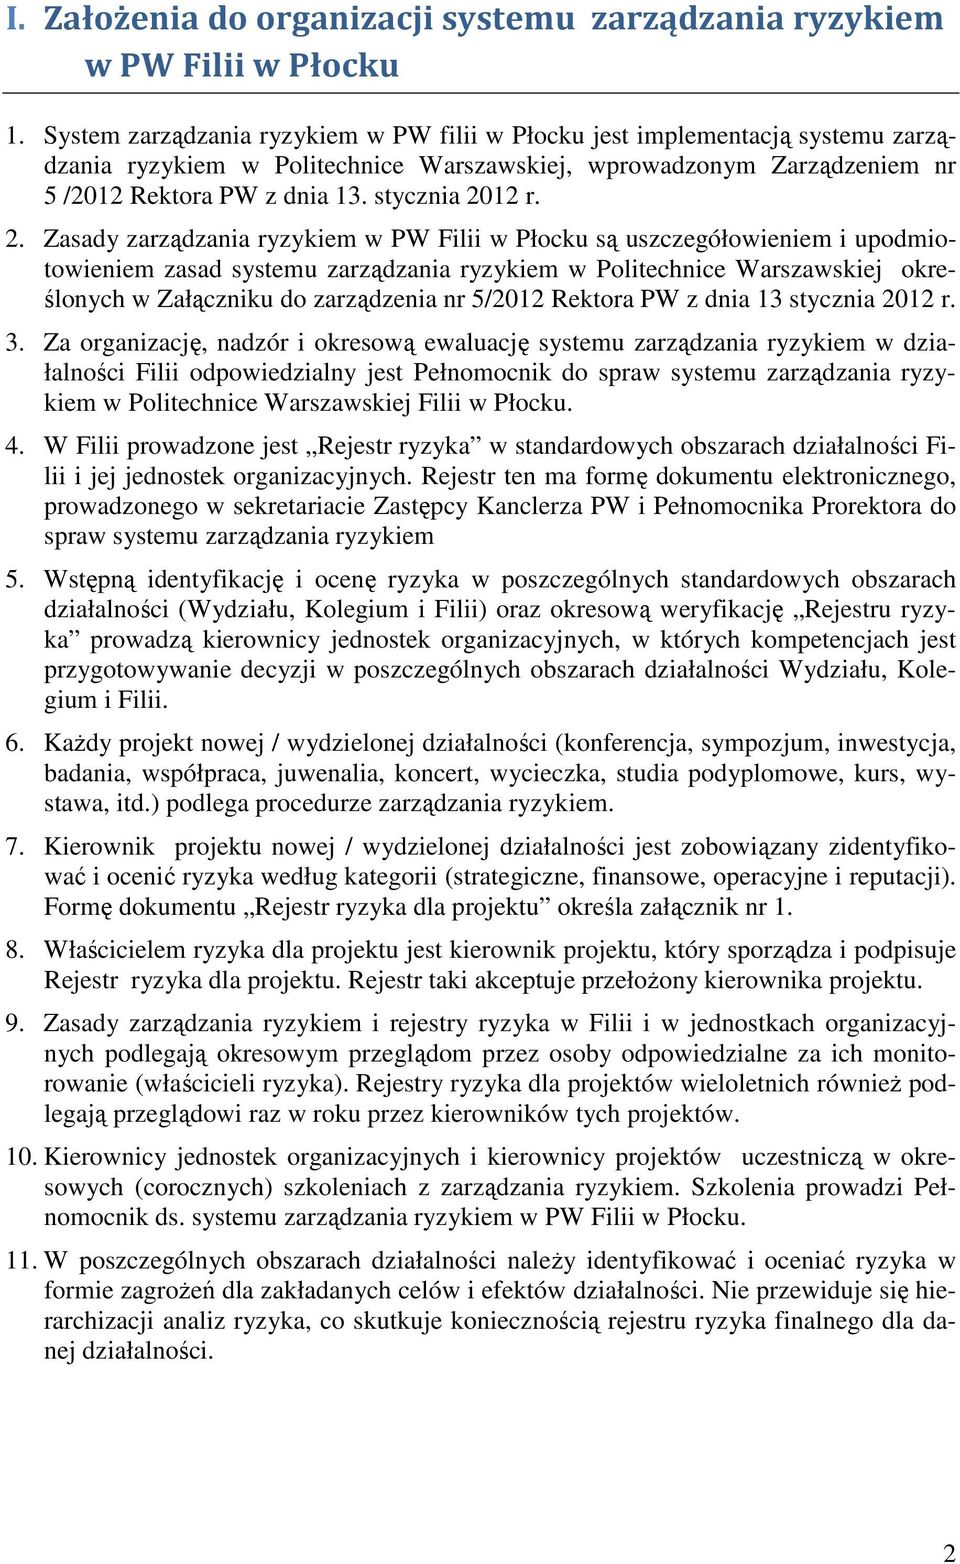 2. Zasady zarządzania ryzykiem w PW Filii w Płocku są uszczegółowieniem i upodmiotowieniem zasad systemu zarządzania ryzykiem w Politechnice Warszawskiej określonych w Załączniku do zarządzenia nr